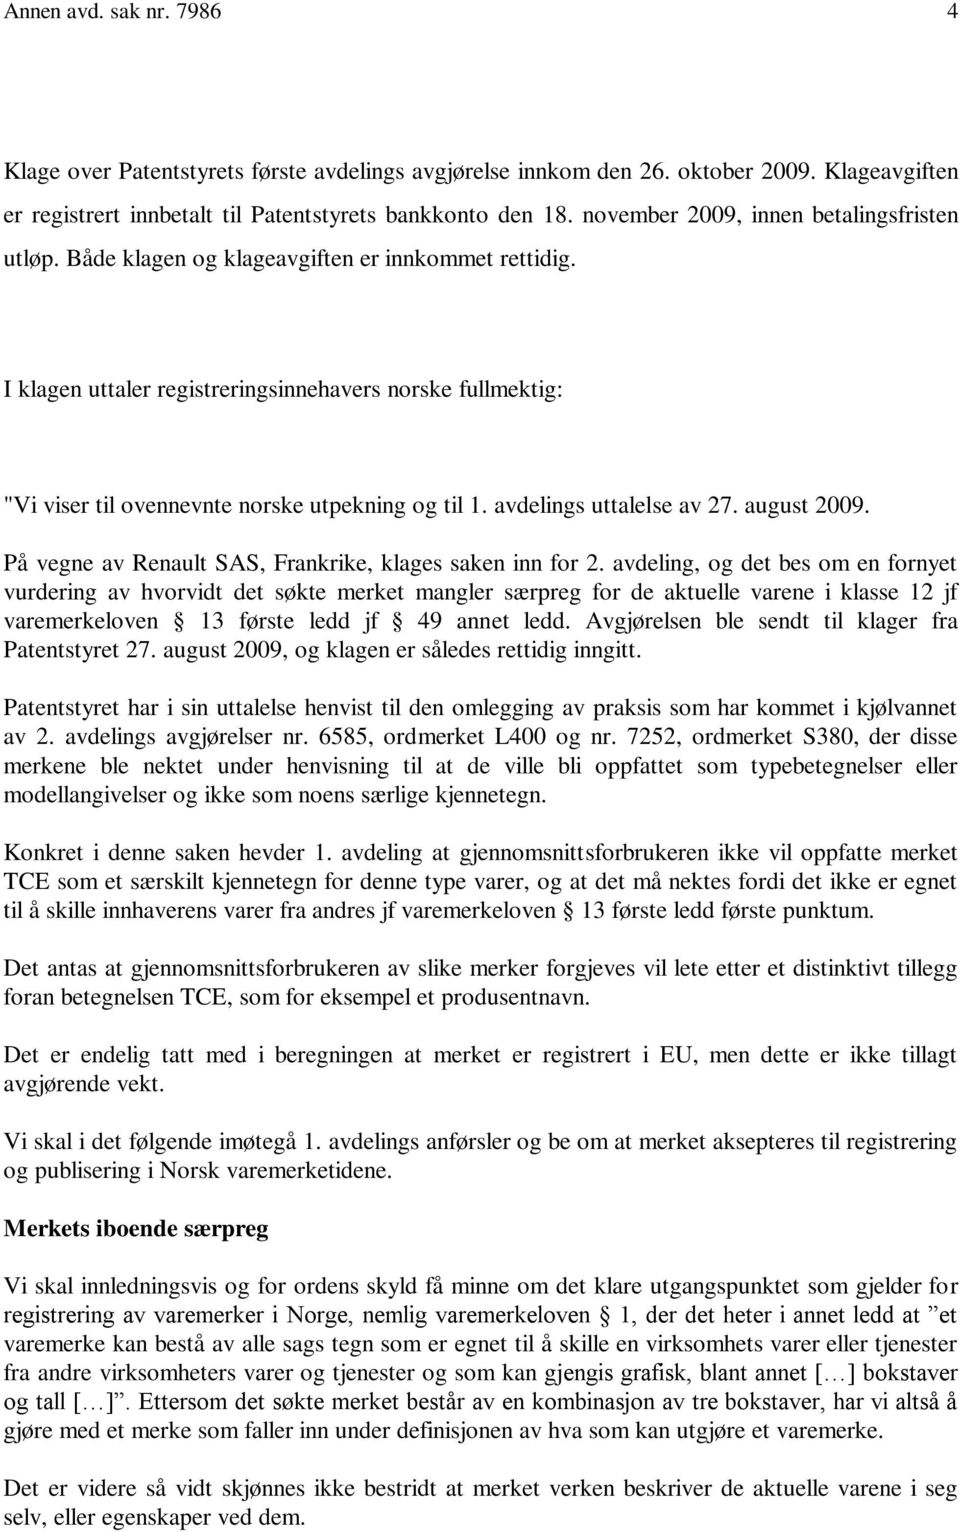 I klagen uttaler registreringsinnehavers norske fullmektig: "Vi viser til ovennevnte norske utpekning og til 1. avdelings uttalelse av 27. august 2009.